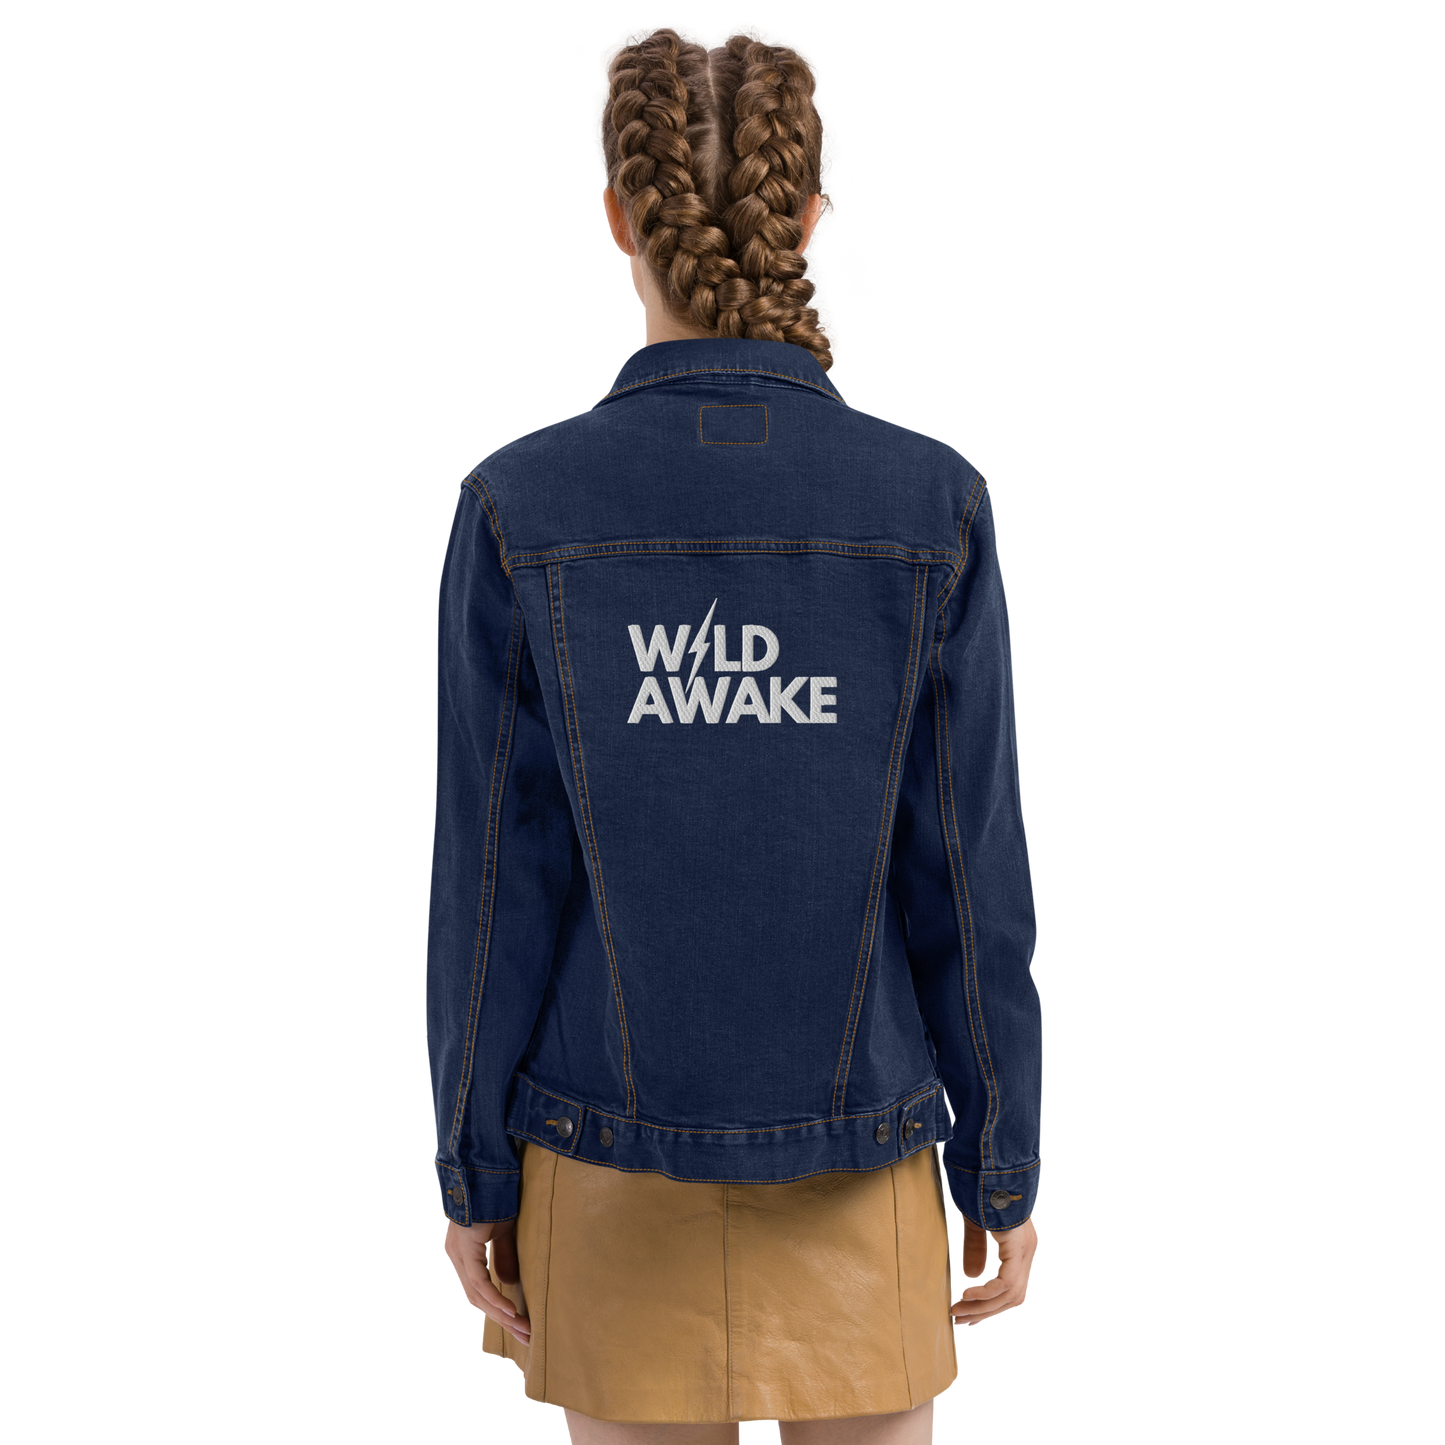 Wild Awake Embroidered Ring-spun Denim Jacket